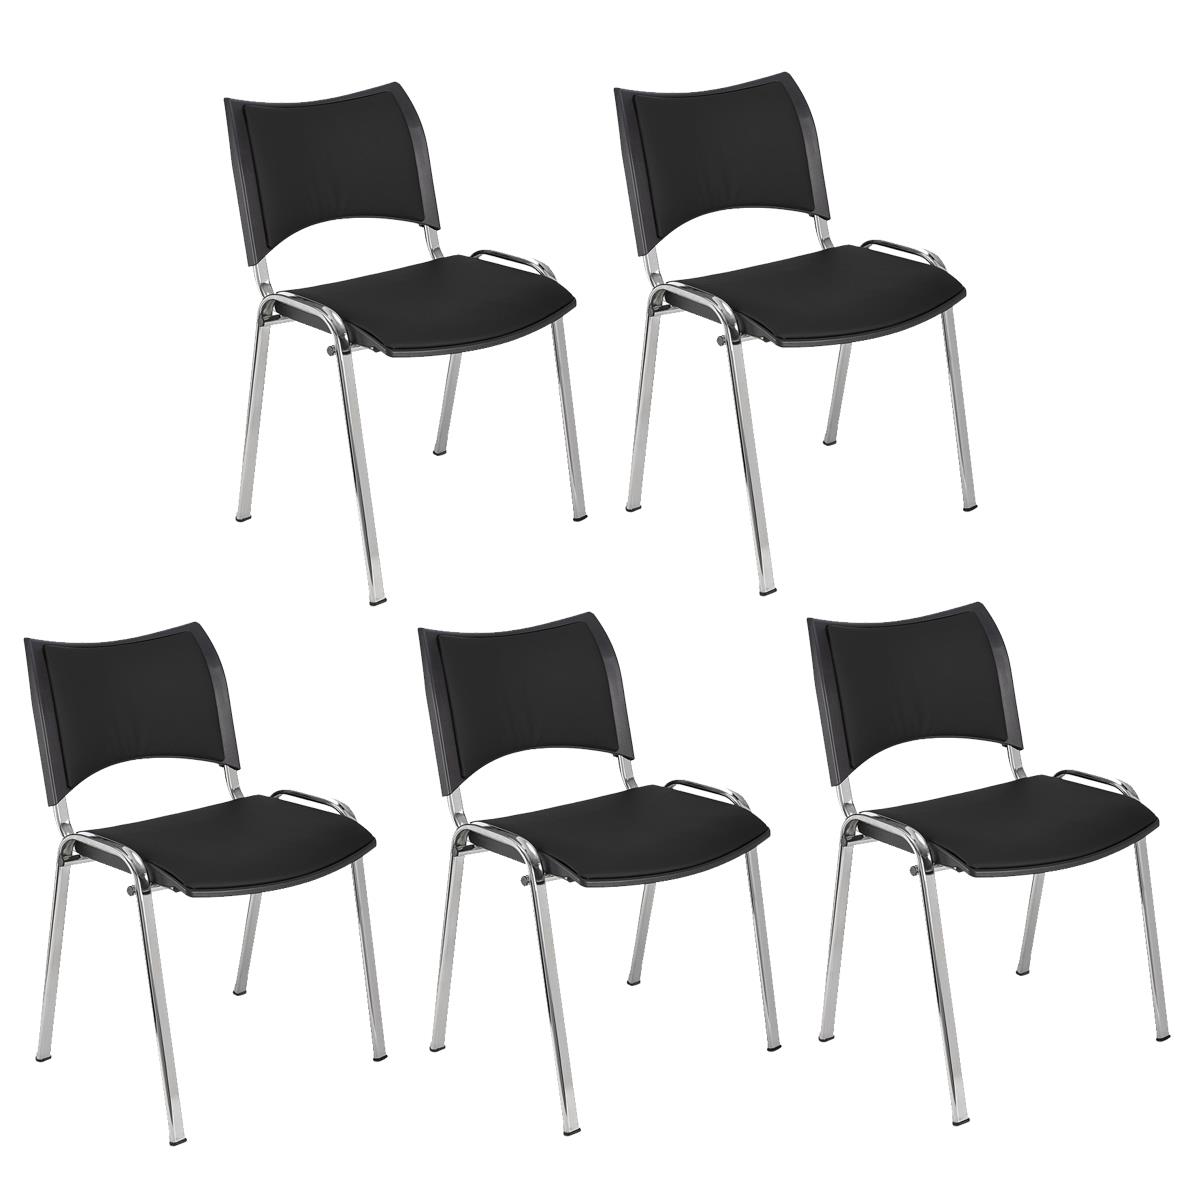 Lote 5 Cadeiras de Visita ROMEL PELE, Prática e Empilhável, Pernas Cromadas, Preto